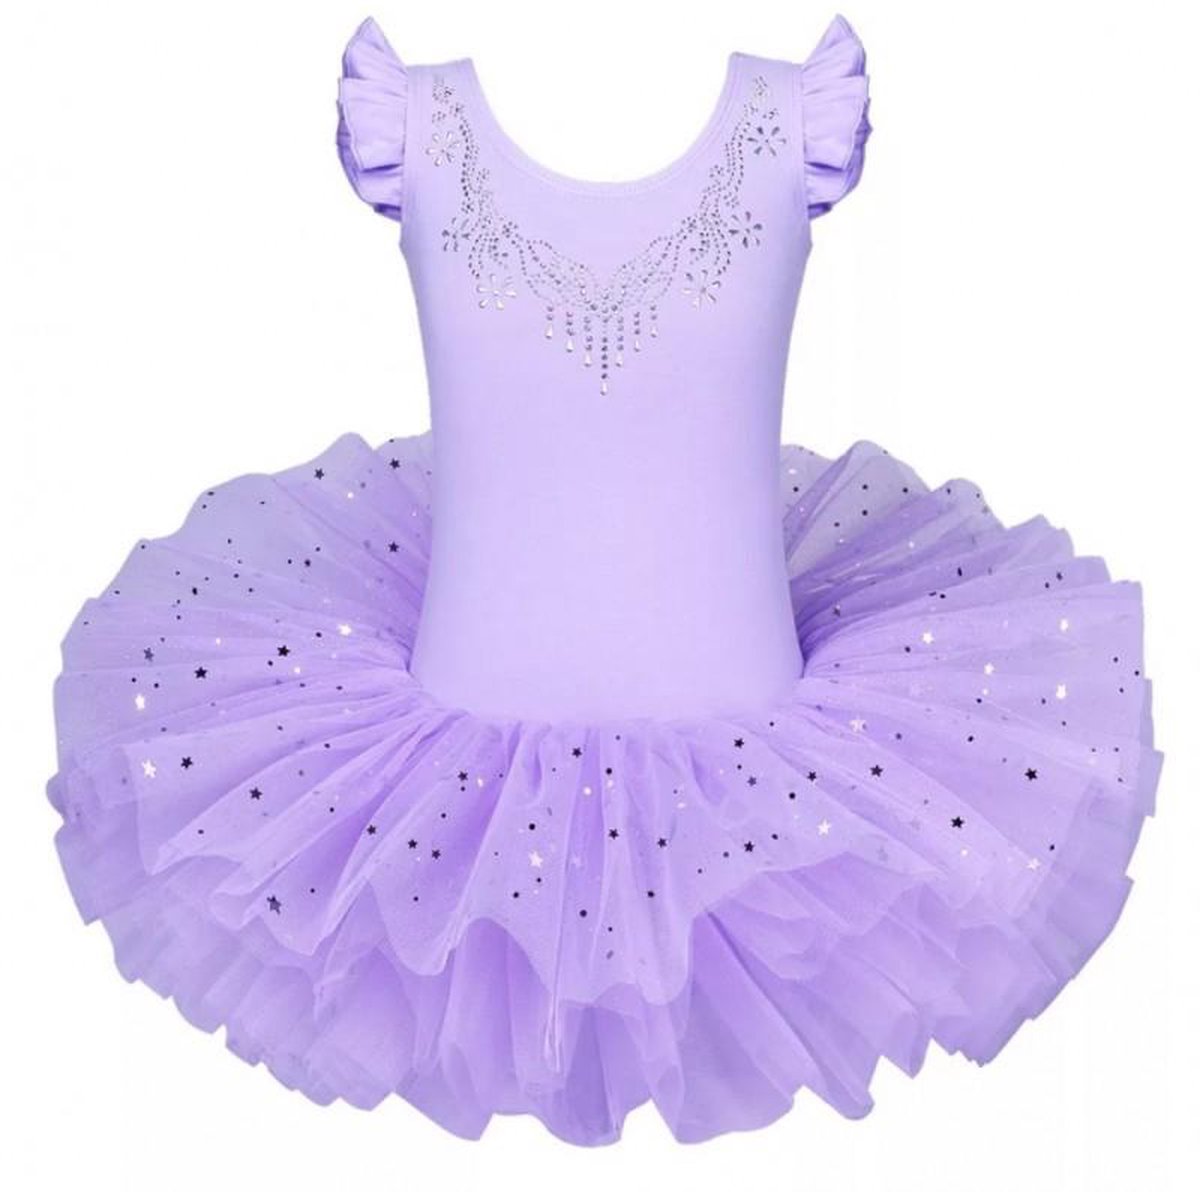 Balletpakje Ballerina + Tutu - lila - Ballet - maat 104-110 prinsessen tutu verkleed jurk meisje